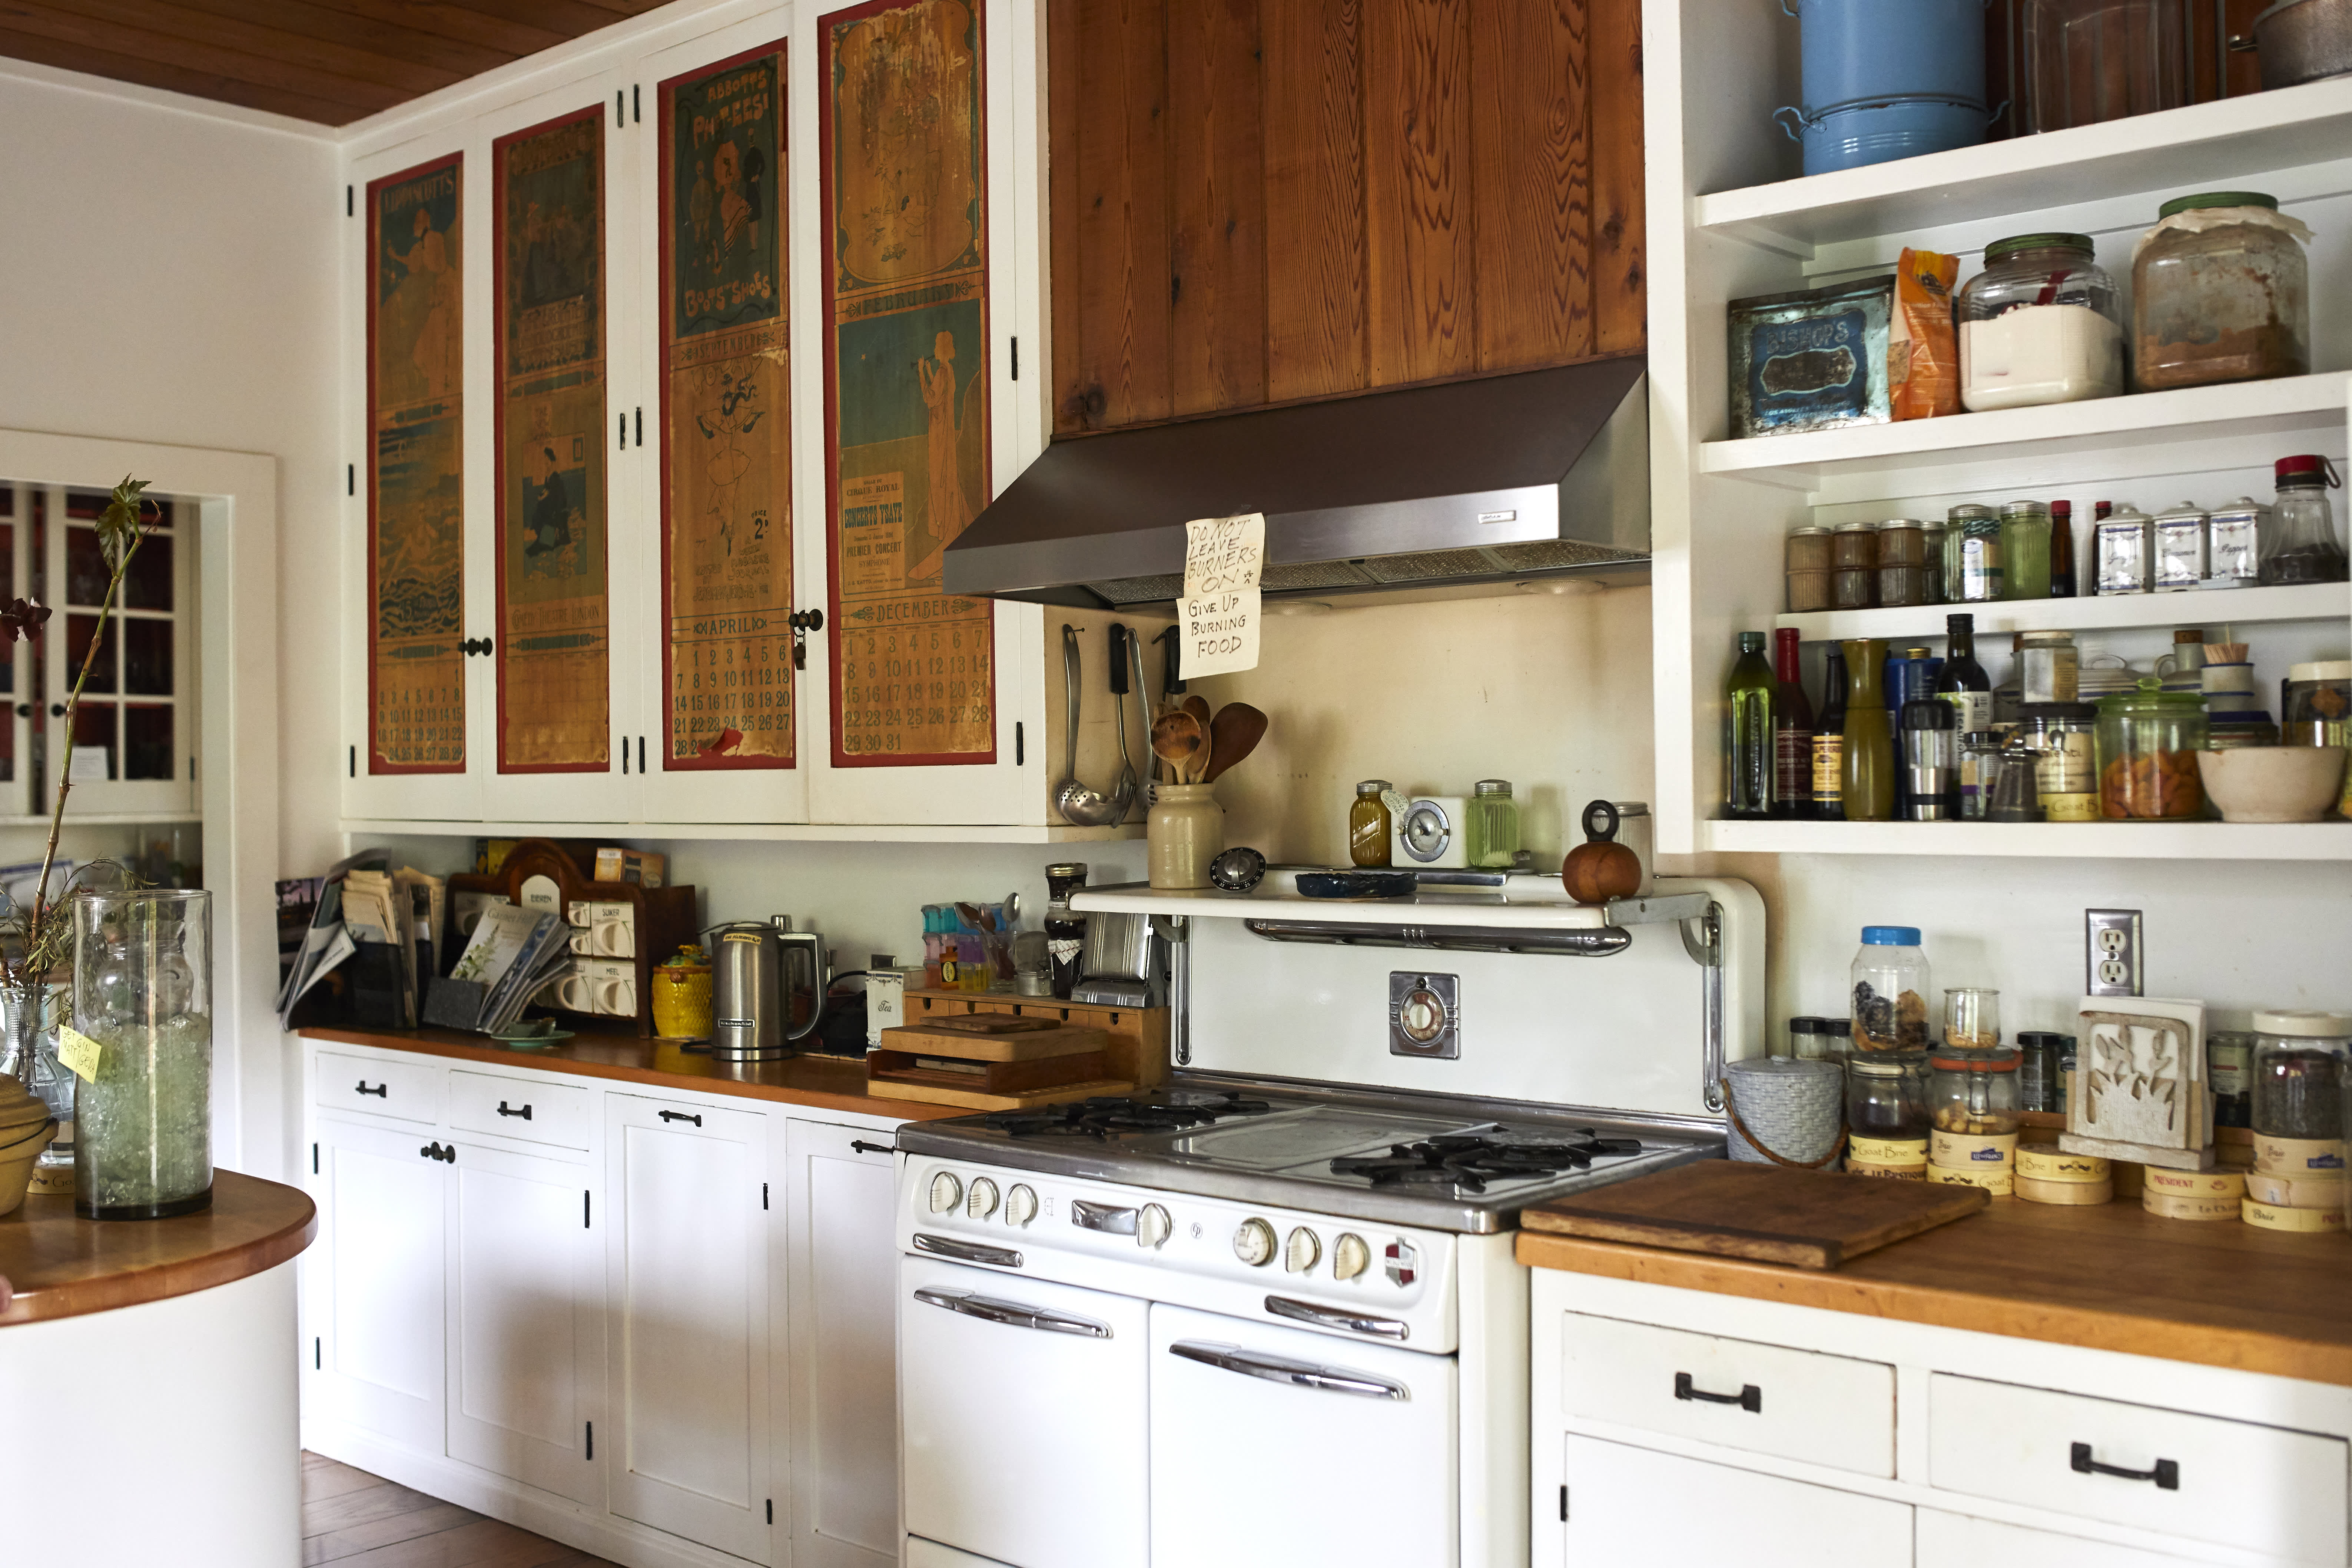 https://cdn.apartmenttherapy.info/image/upload/v1584410009/k/Photo/Lifestyle/2020-03-forever-kitchen-joan/joan-forever-kitchen-_27.jpg